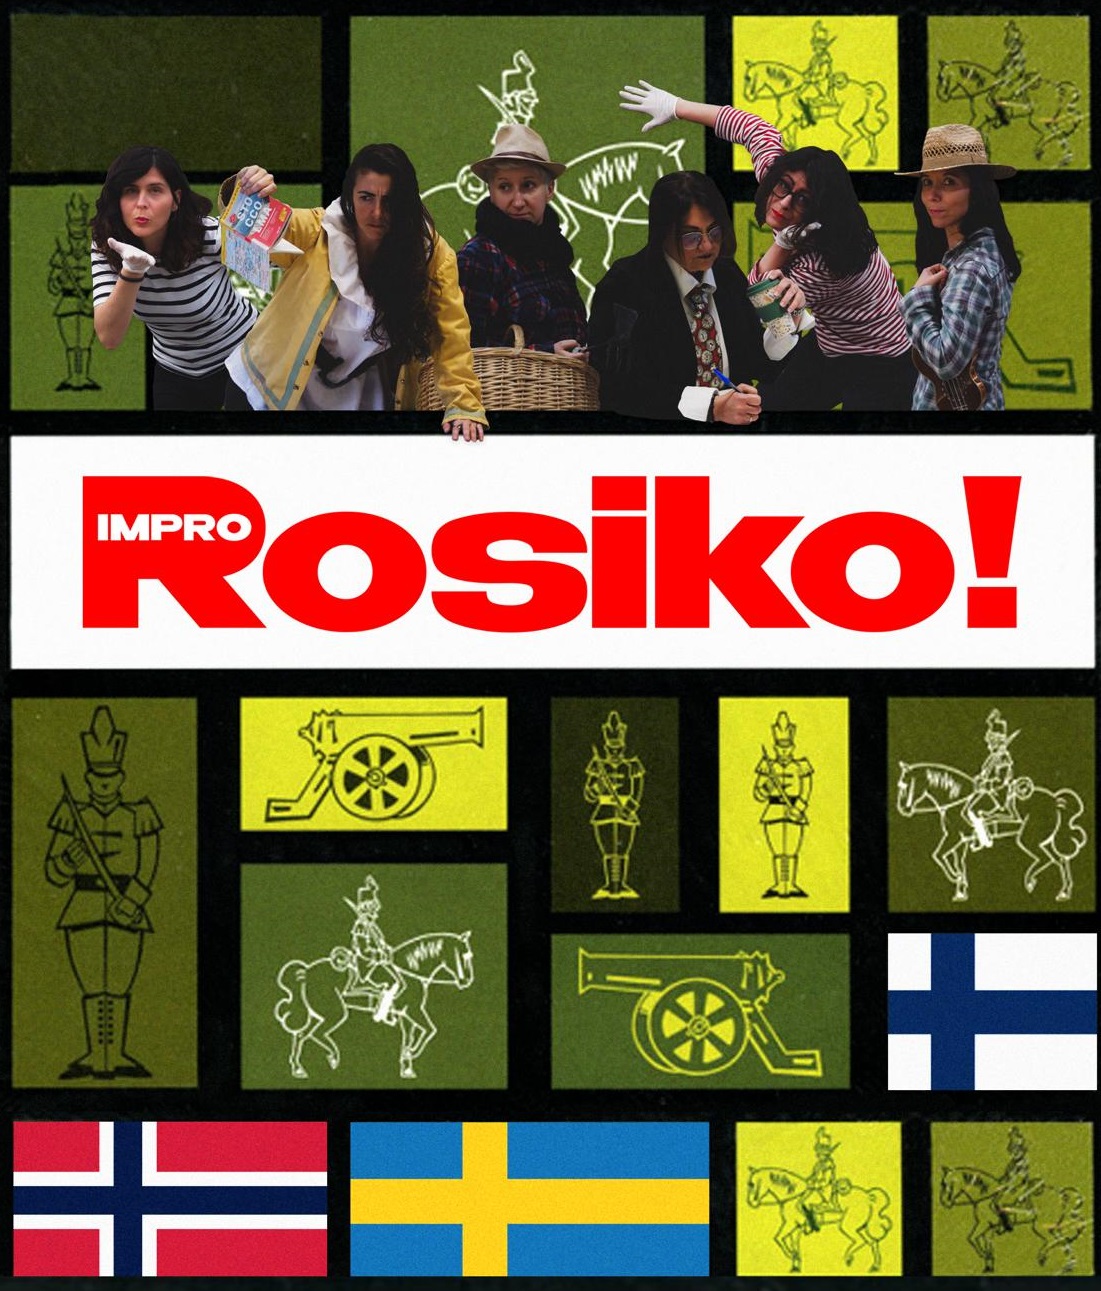 Rosiko! - Rassegna di improvvisazione teatrale "Kick Off" al Cecchi Point